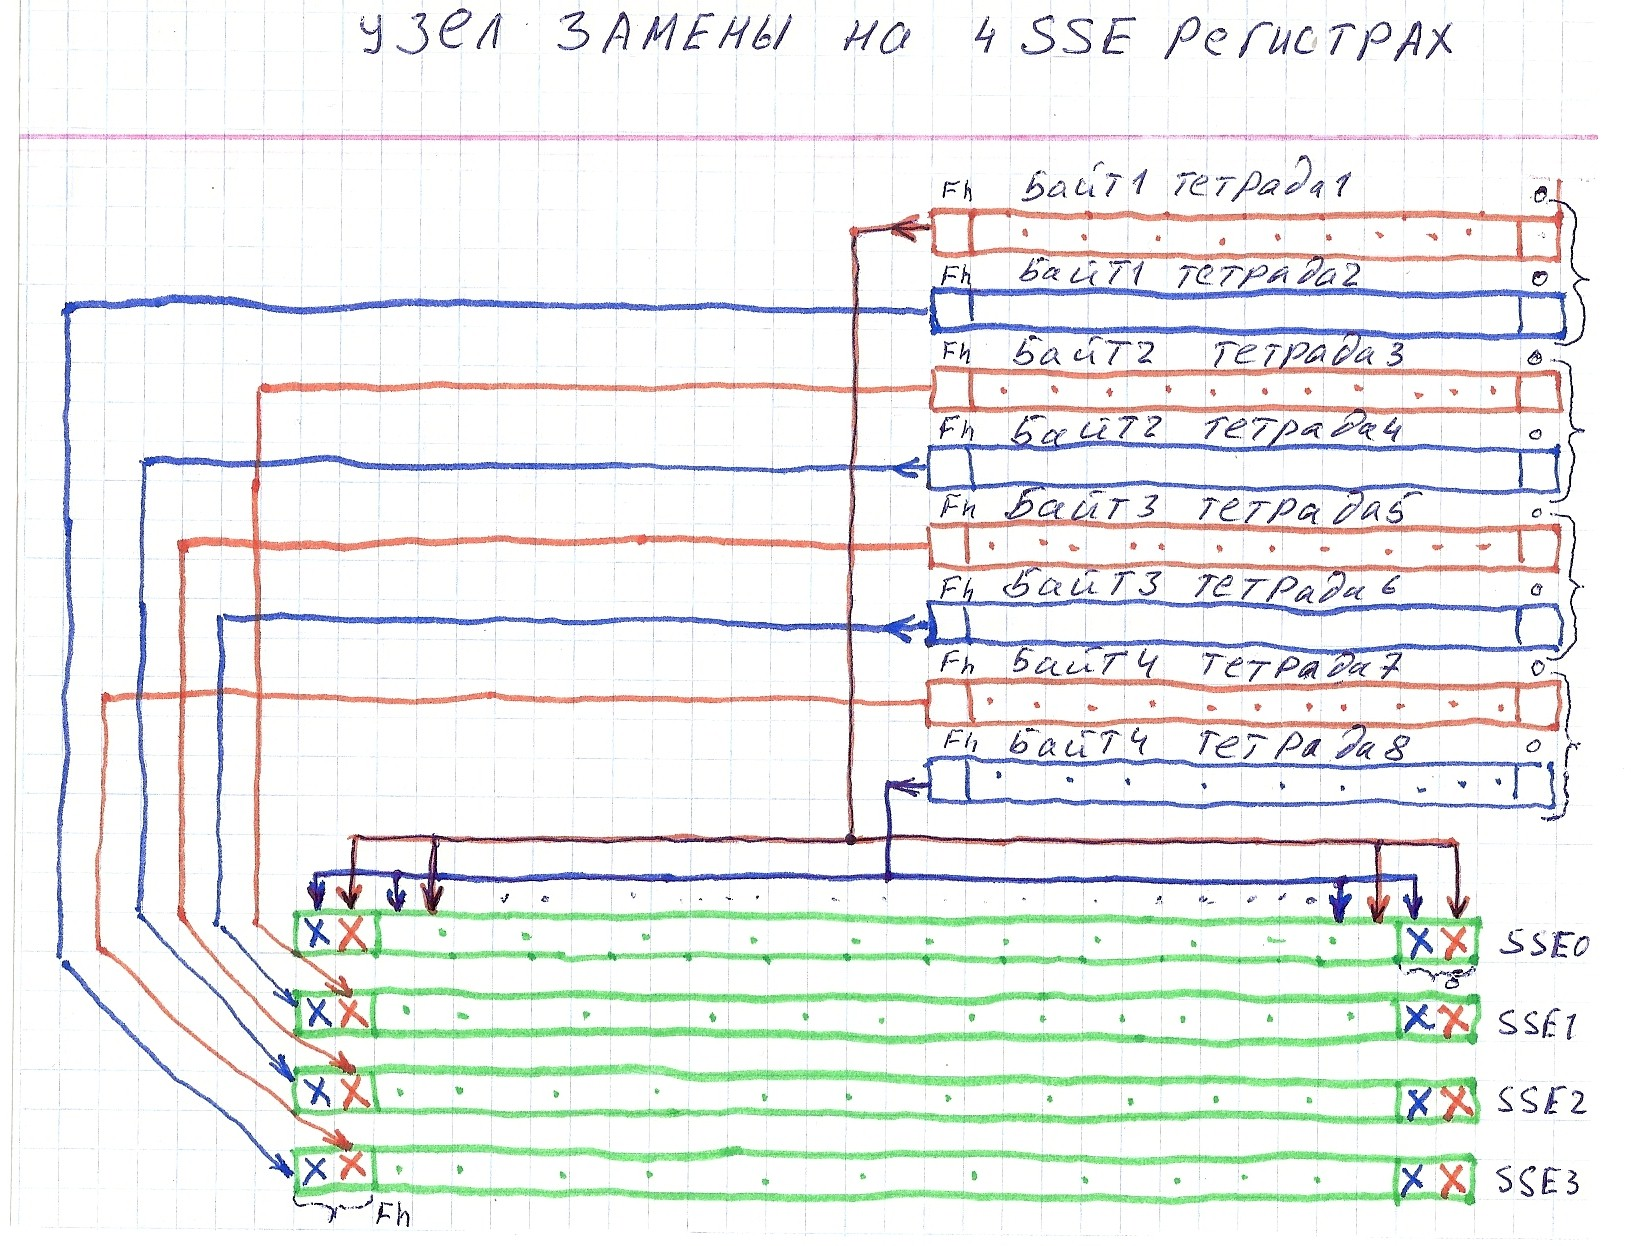 Рис. 4. Схема одного из возможных размещений узлов замены на SSE-регистрах